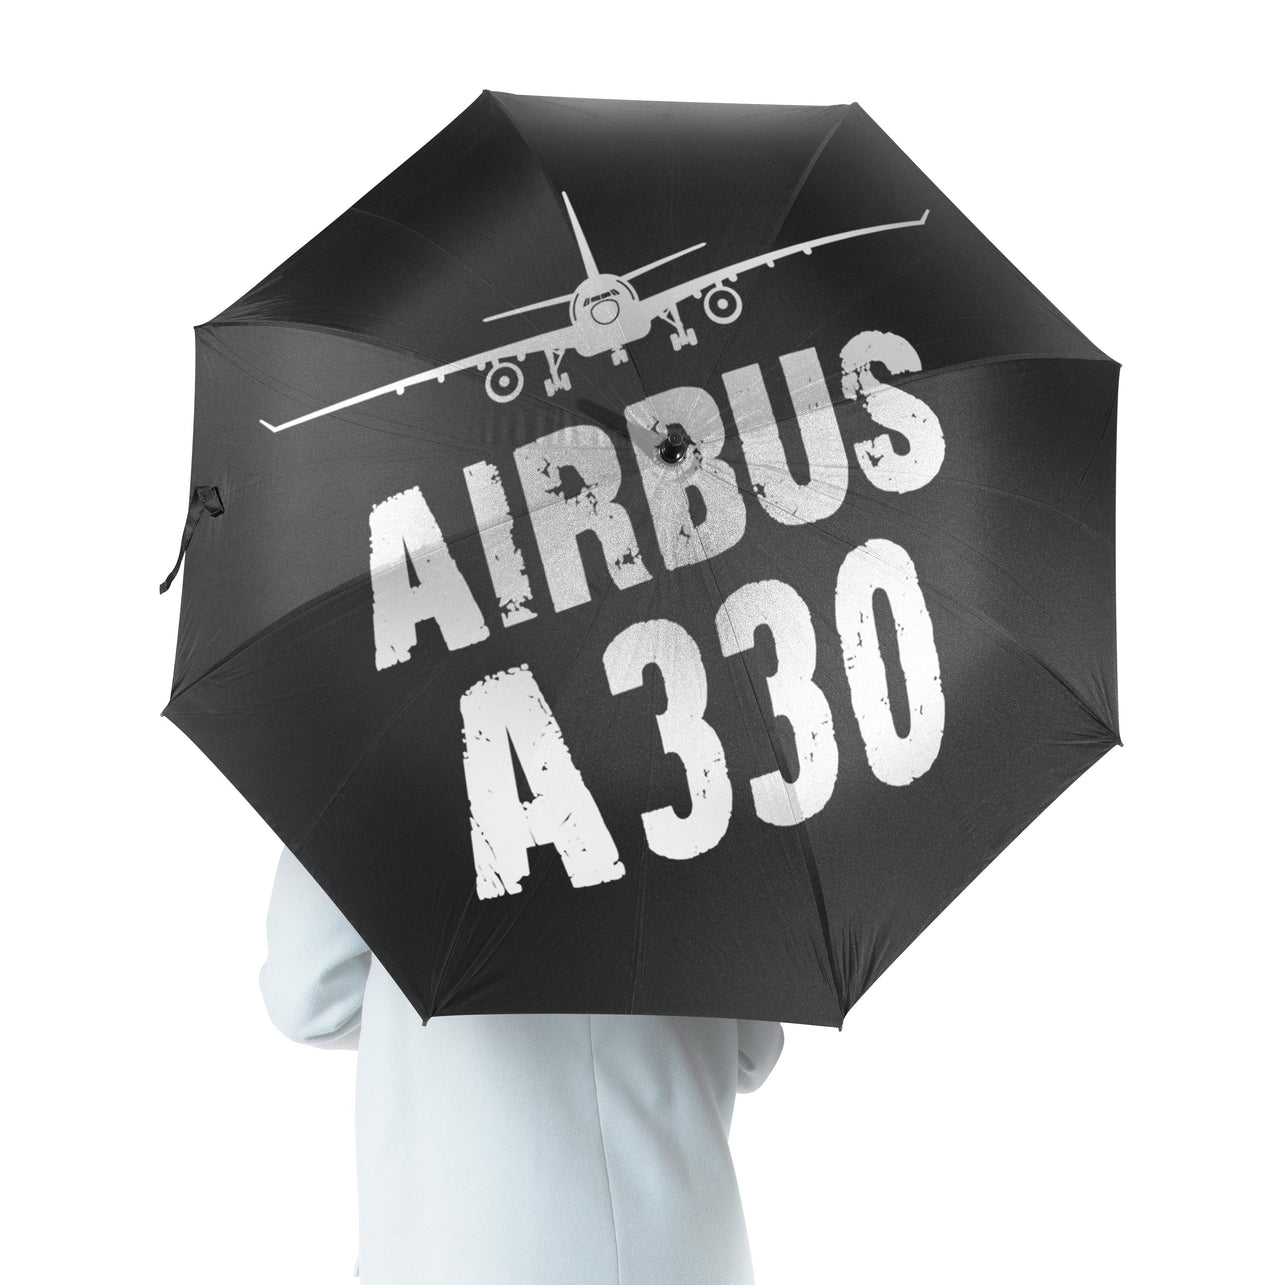 Airbus A330 & Plane Designed Umbrella